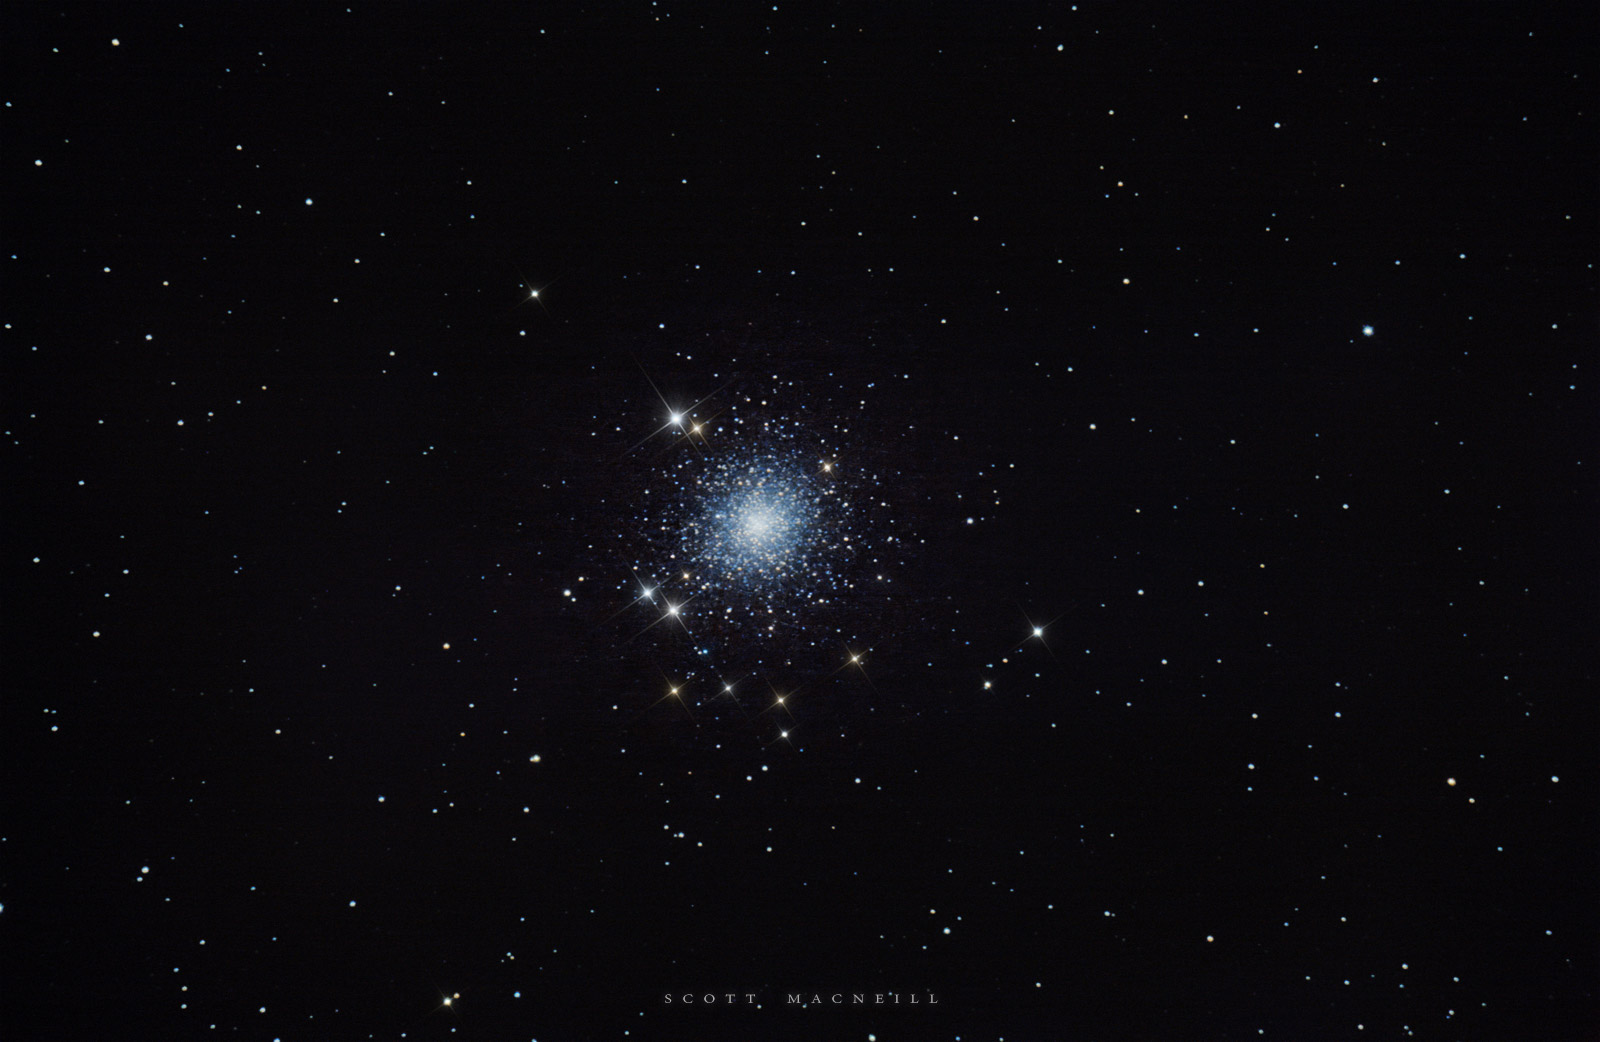 Messier 2 - The Aquarius Cluster